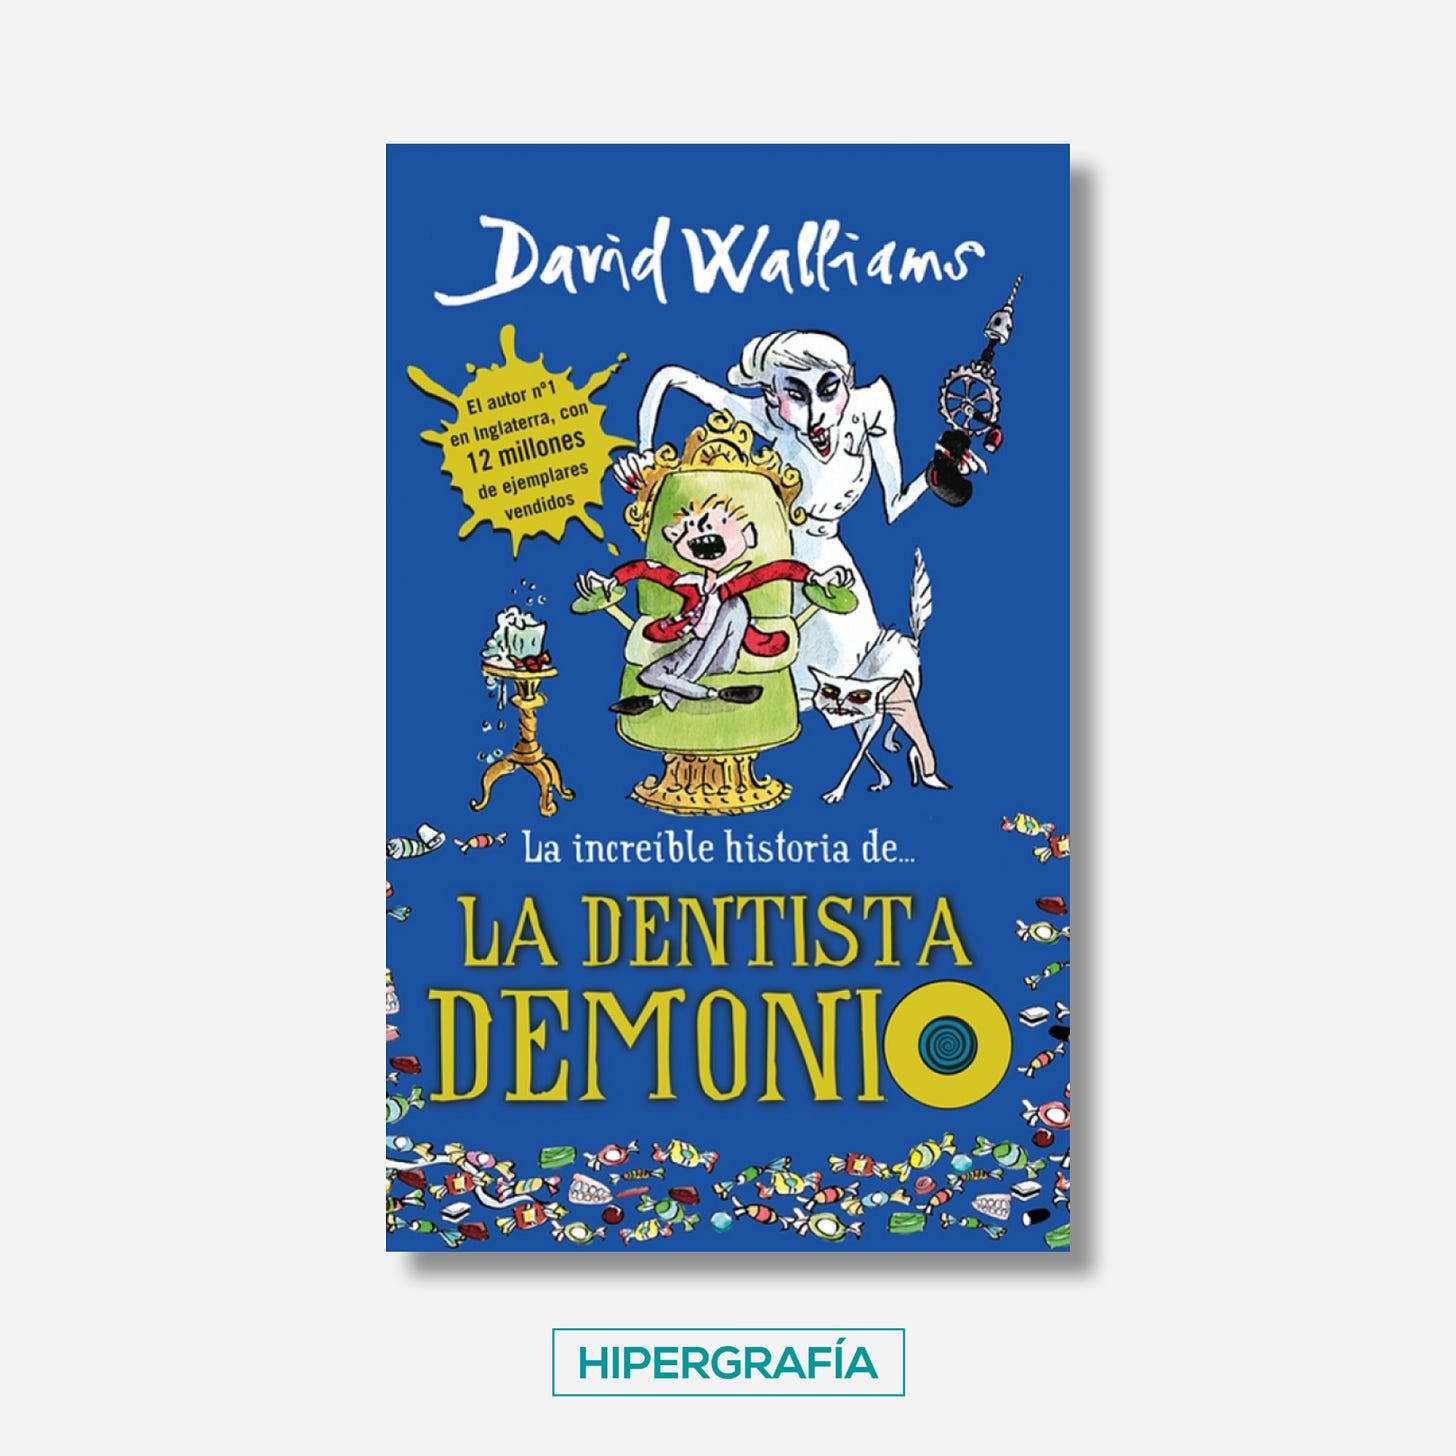 Portada de La dentista demonio de David Walliams, de editorial Montena, publicado el 2017.